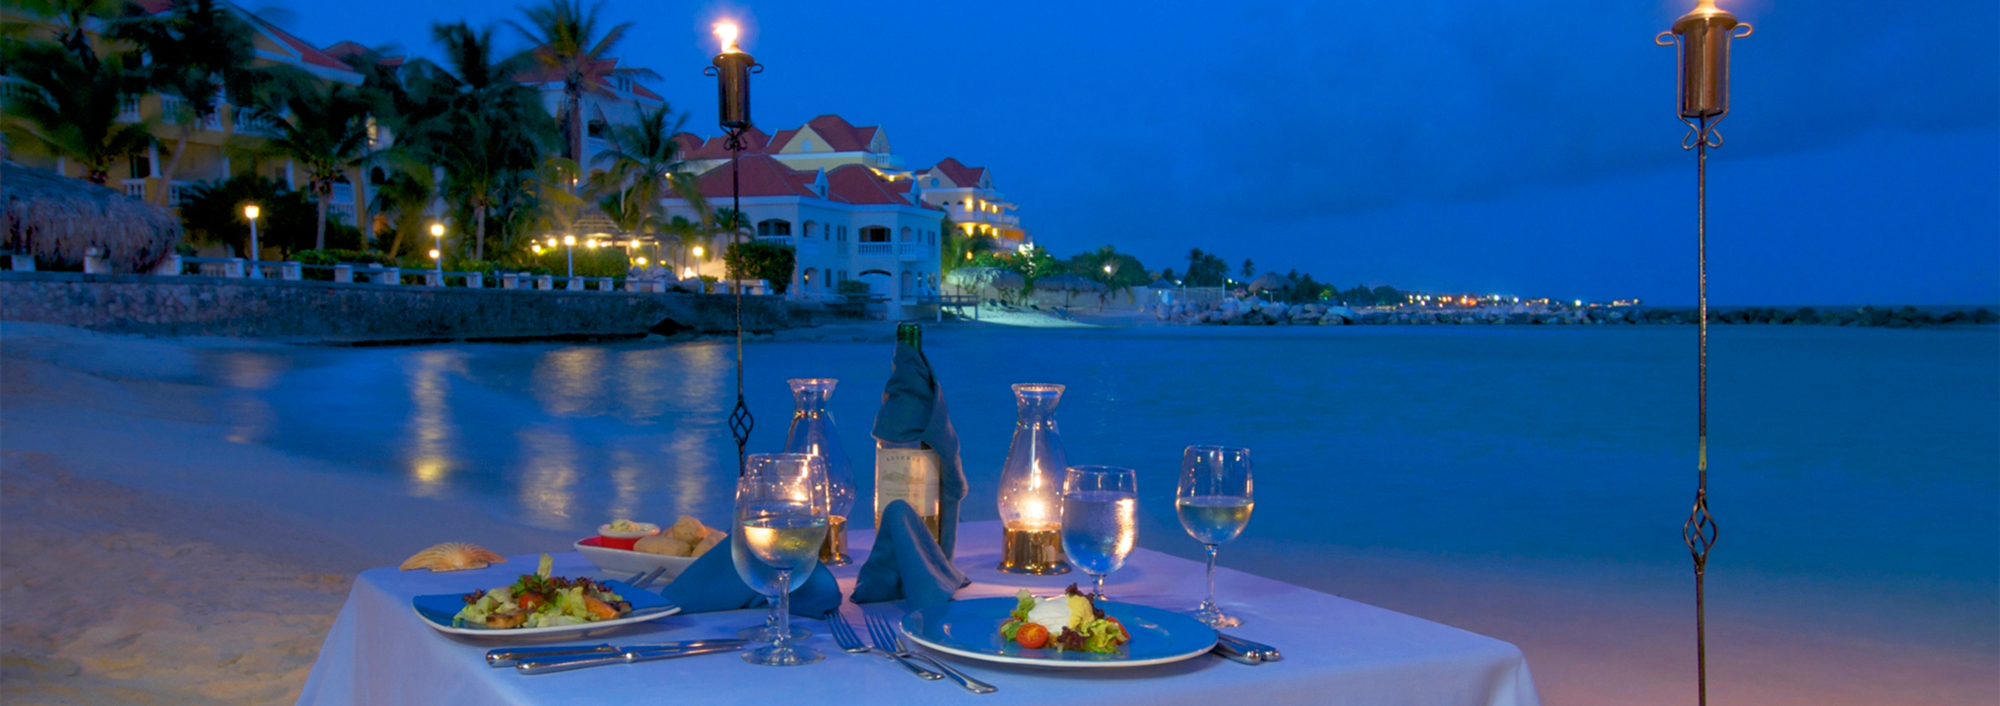 Romantisch gedeckter Tisch zum Candle Light Dinner am Strand im Avila Beach Hotel auf Curacao